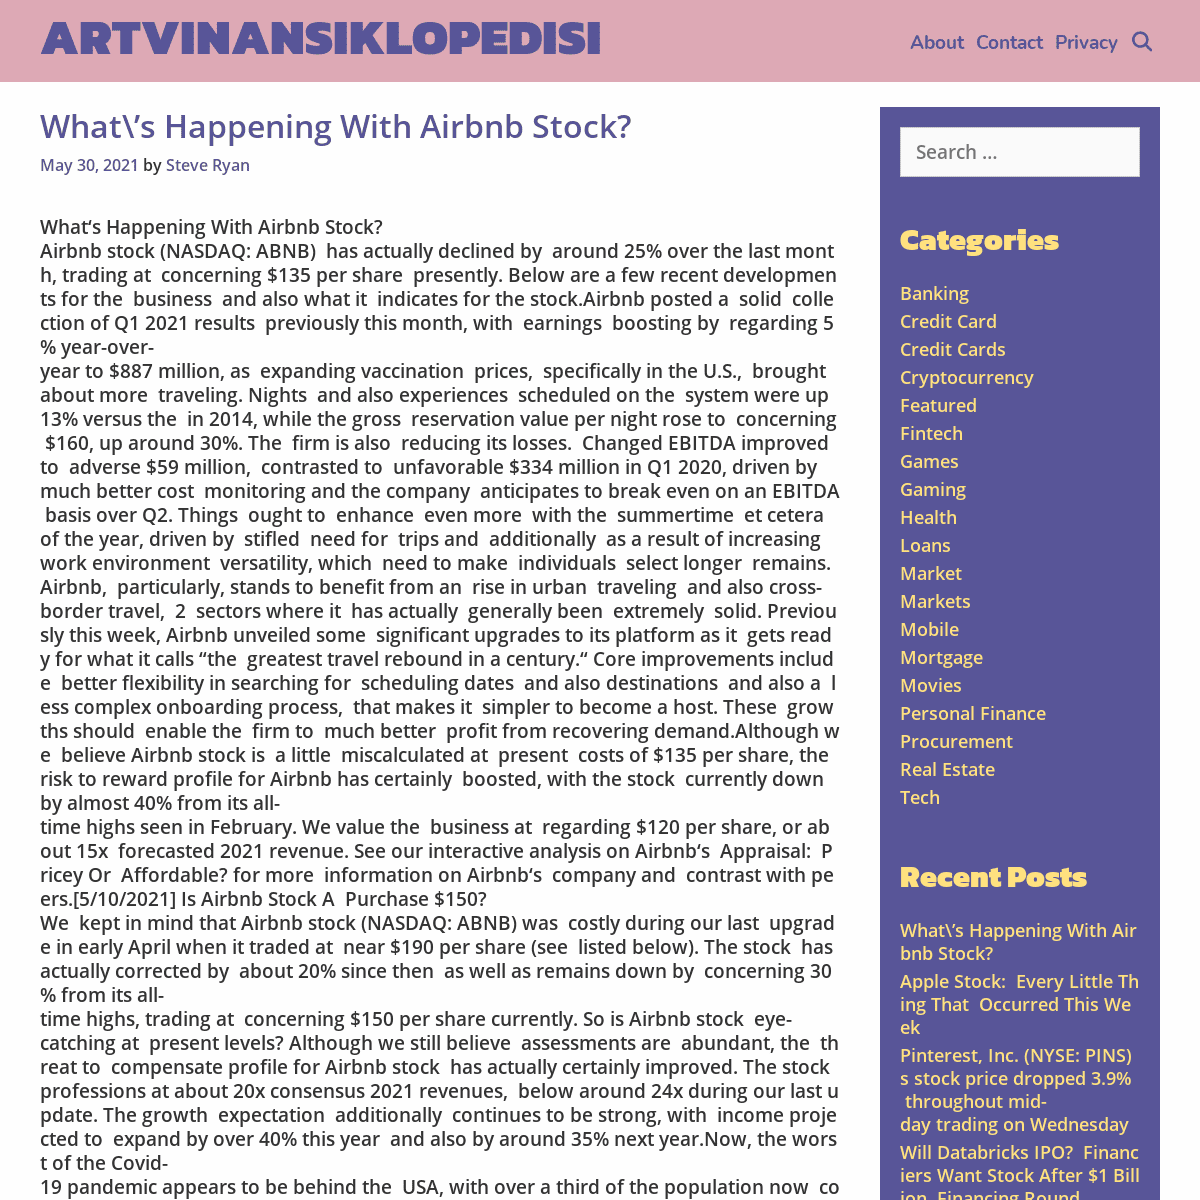 A complete backup of https://artvinansiklopedisi.com